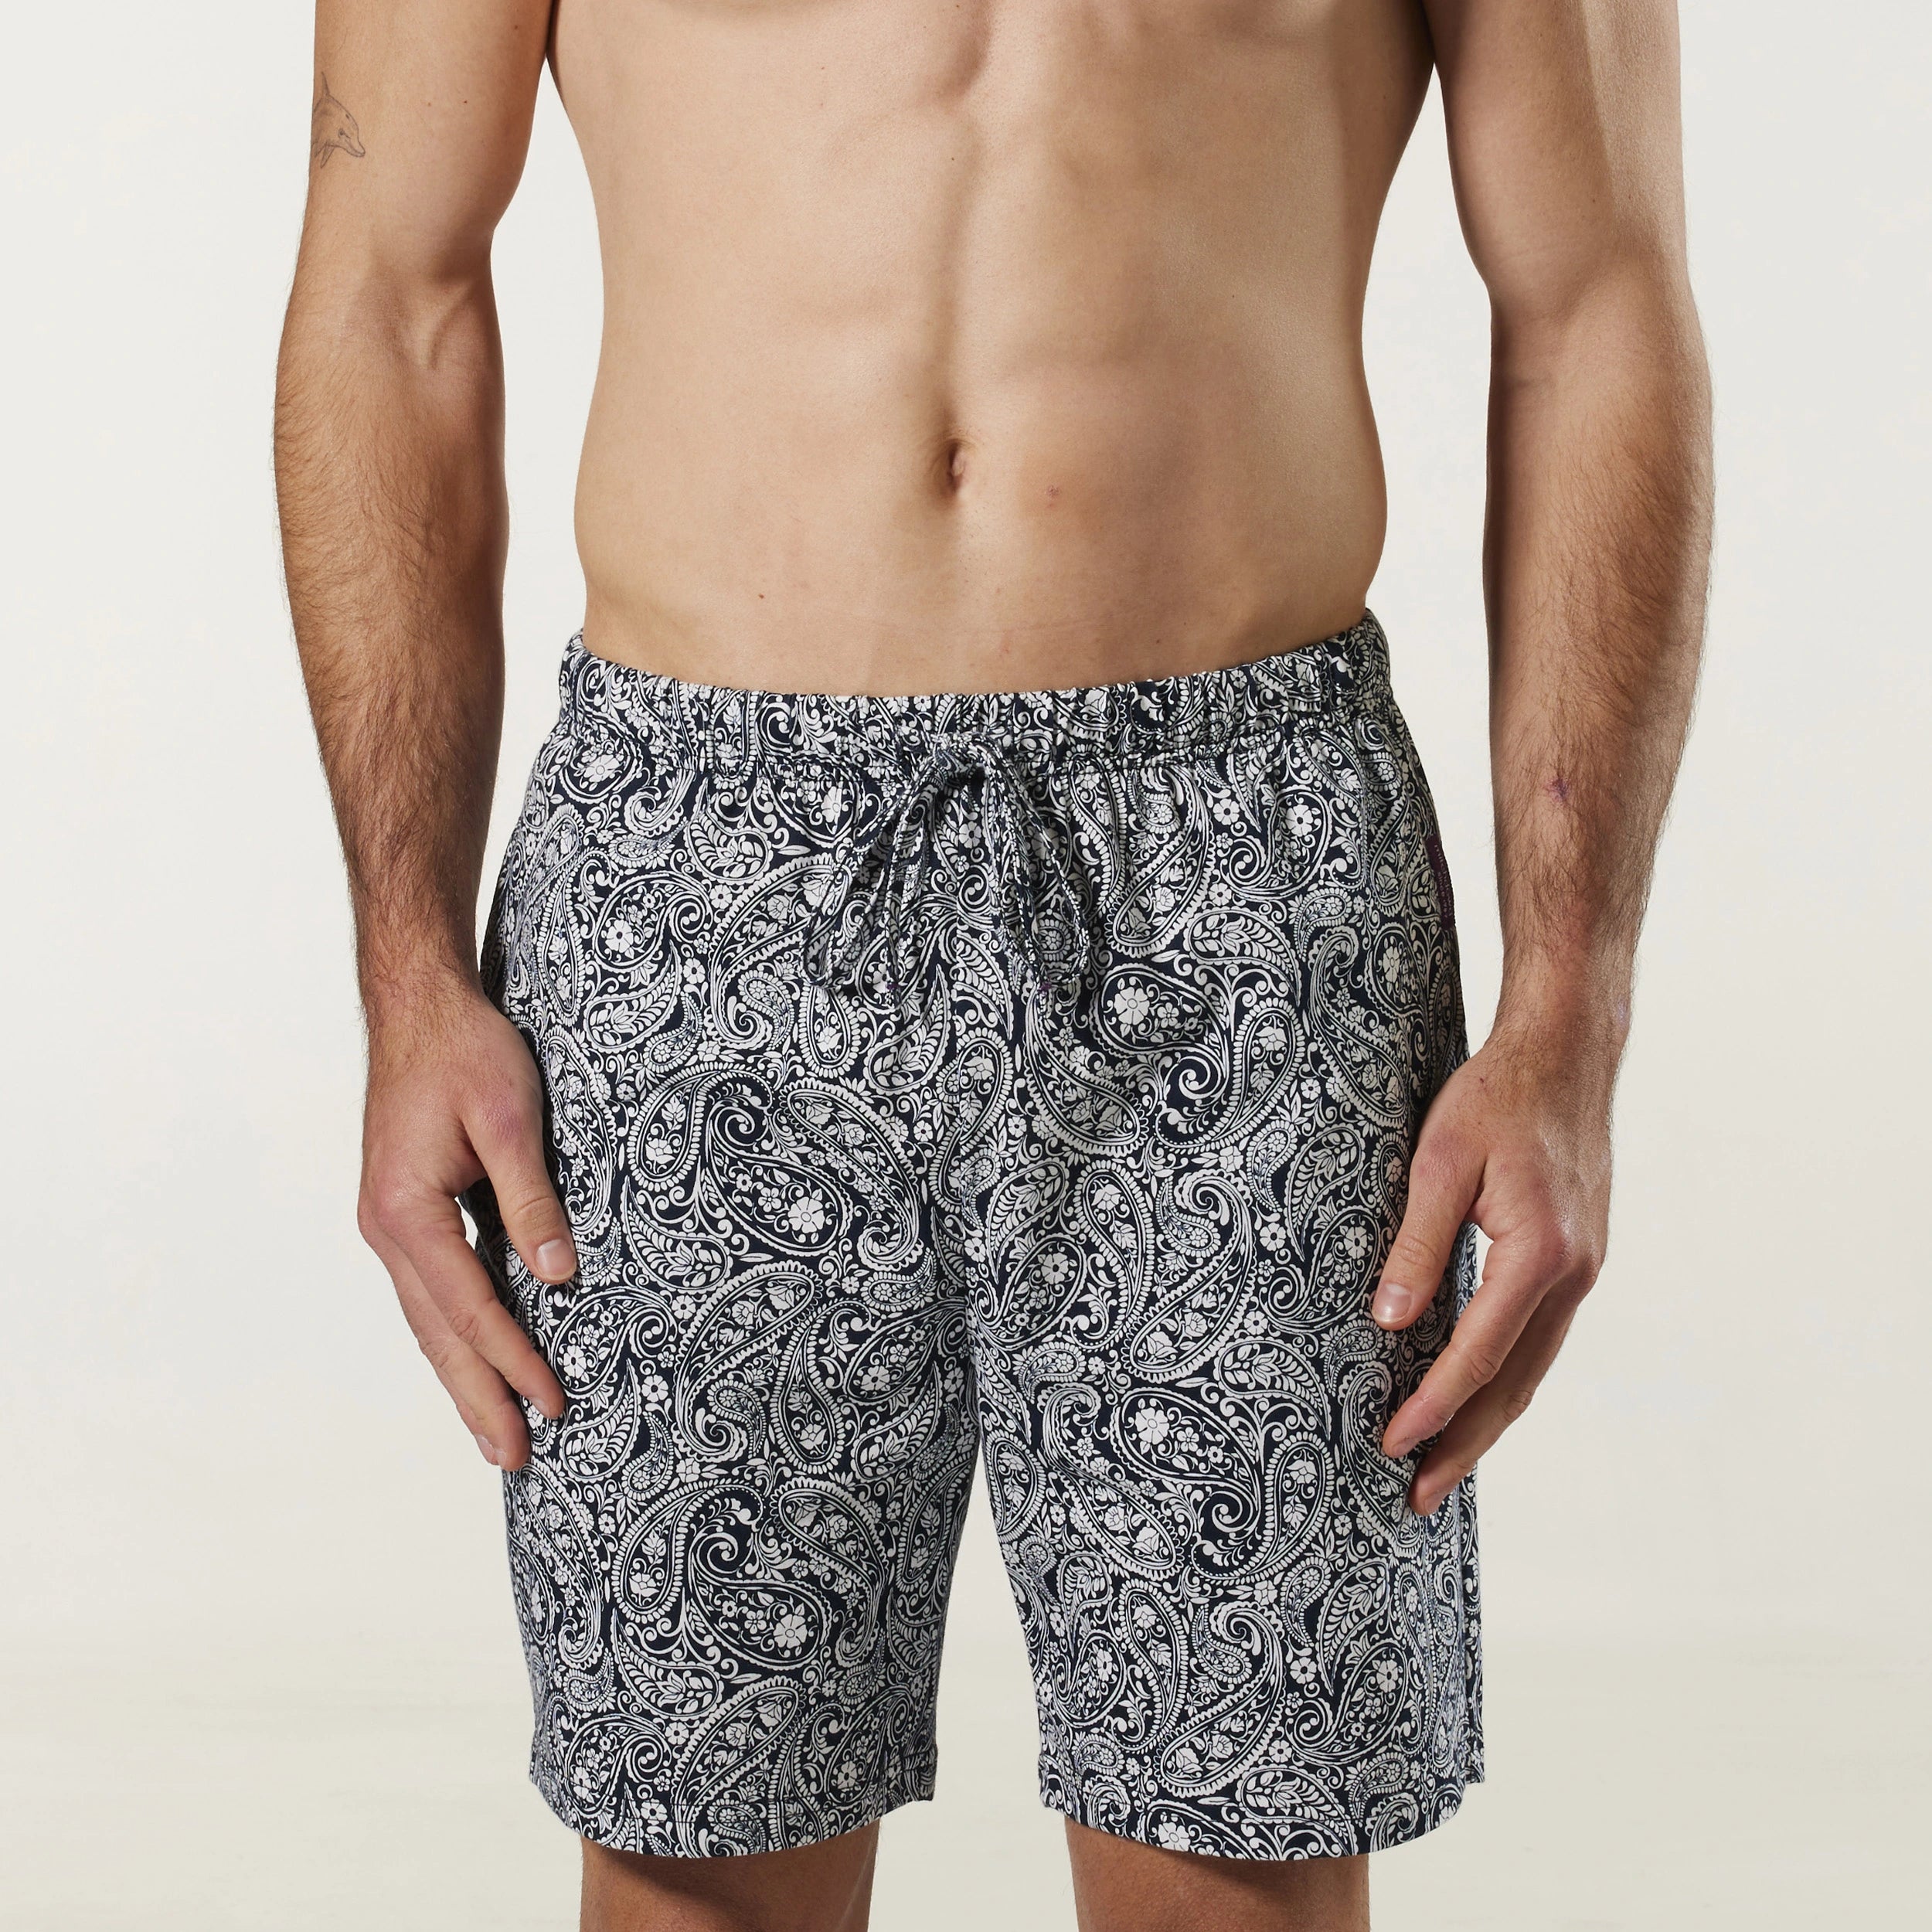 Mitch Dowd Men's Summer Swirl Cotton Knit Sleep Short Pyjama Shorts Shop  Online Today.